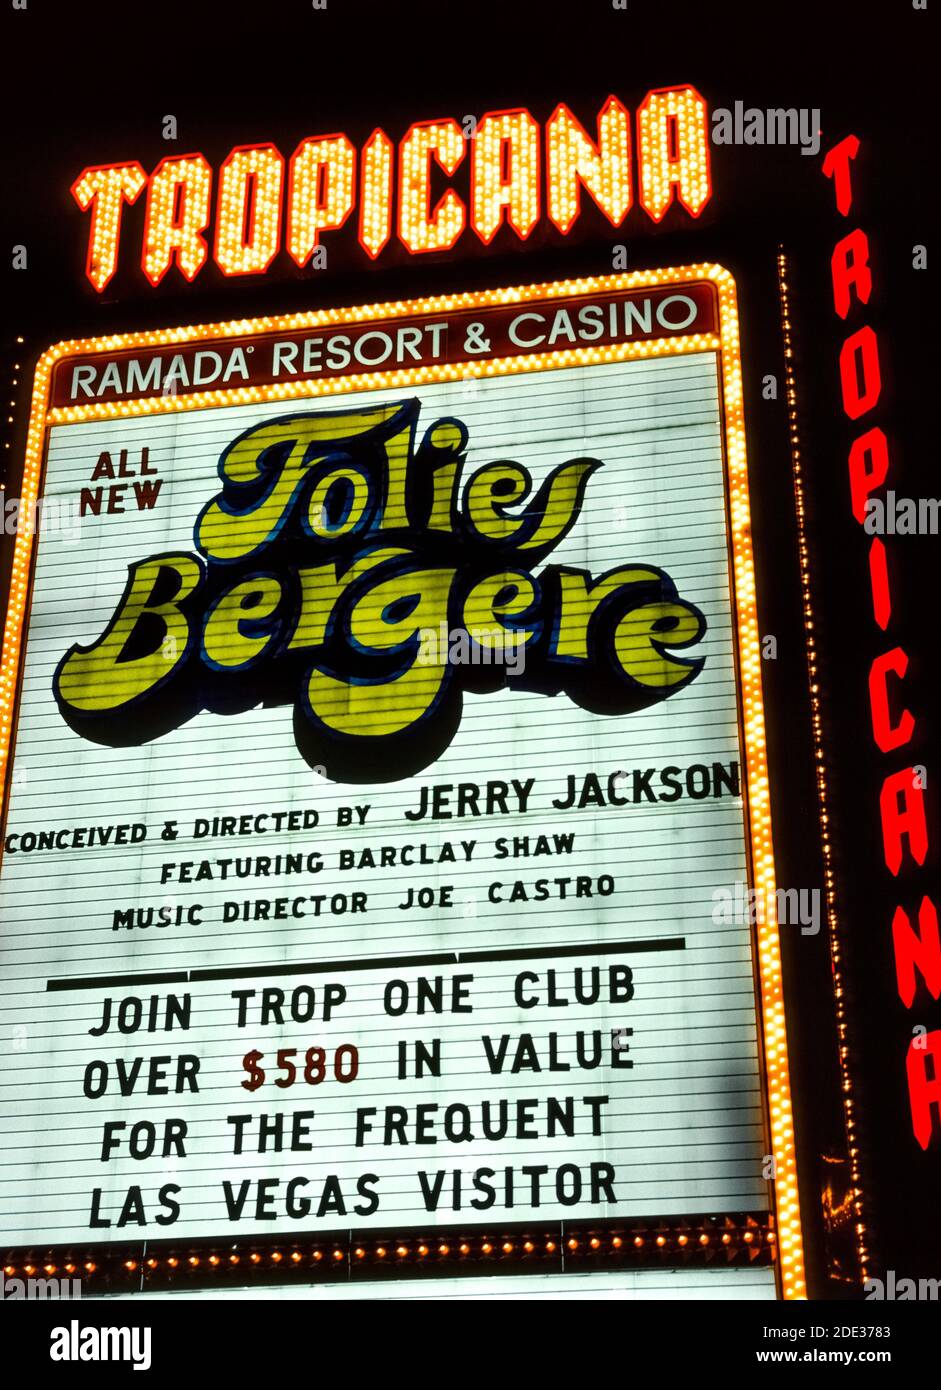 El neón y otras luces hicieron que este cartel al aire libre para el Tropicana Resort & Casino destaque por la noche a lo largo de las Vegas Boulevard, más conocido como el Strip, una carretera bordeada de espectaculares hoteles y casinos al sur de los límites de la ciudad de las Vegas, Nevada, Estados Unidos. El Tropicana abrió sus puertas en 1957 y ha estado operando desde entonces en ese famoso destino desértico conocido por sus juegos de azar y buenos tiempos. Esta fotografía histórica fue tomada en 1983 cuando el Tropicana era propiedad de la cadena hotelera Ramada. El letrero anuncia el entretenimiento del hotel, el espectáculo Folies Bergére. Foto de stock